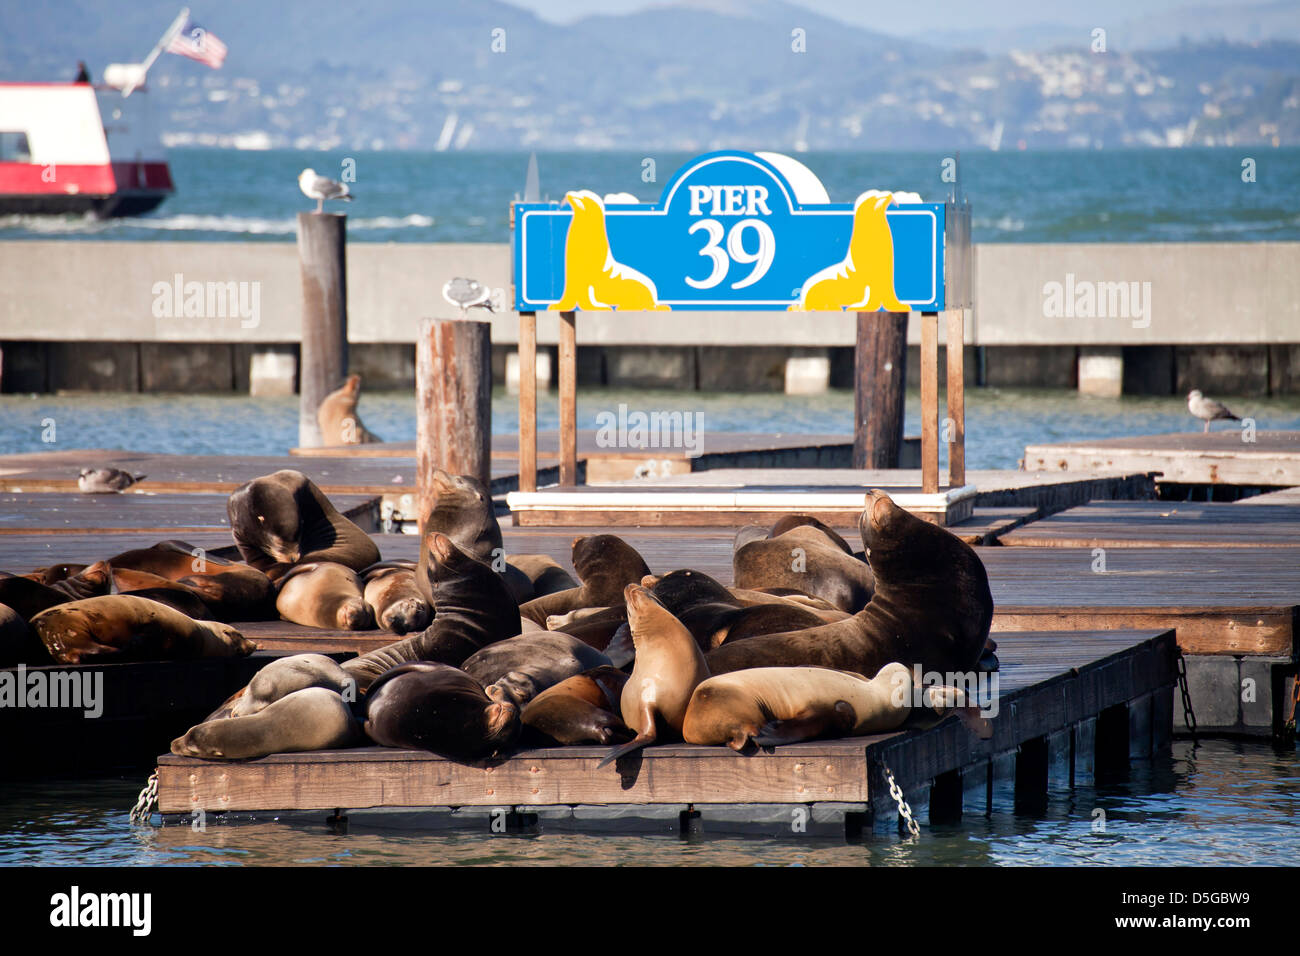 Les lions de mer au Pier 39 de Fisherman's Wharf à San Francisco, Californie, États-Unis d'Amérique, USA Banque D'Images